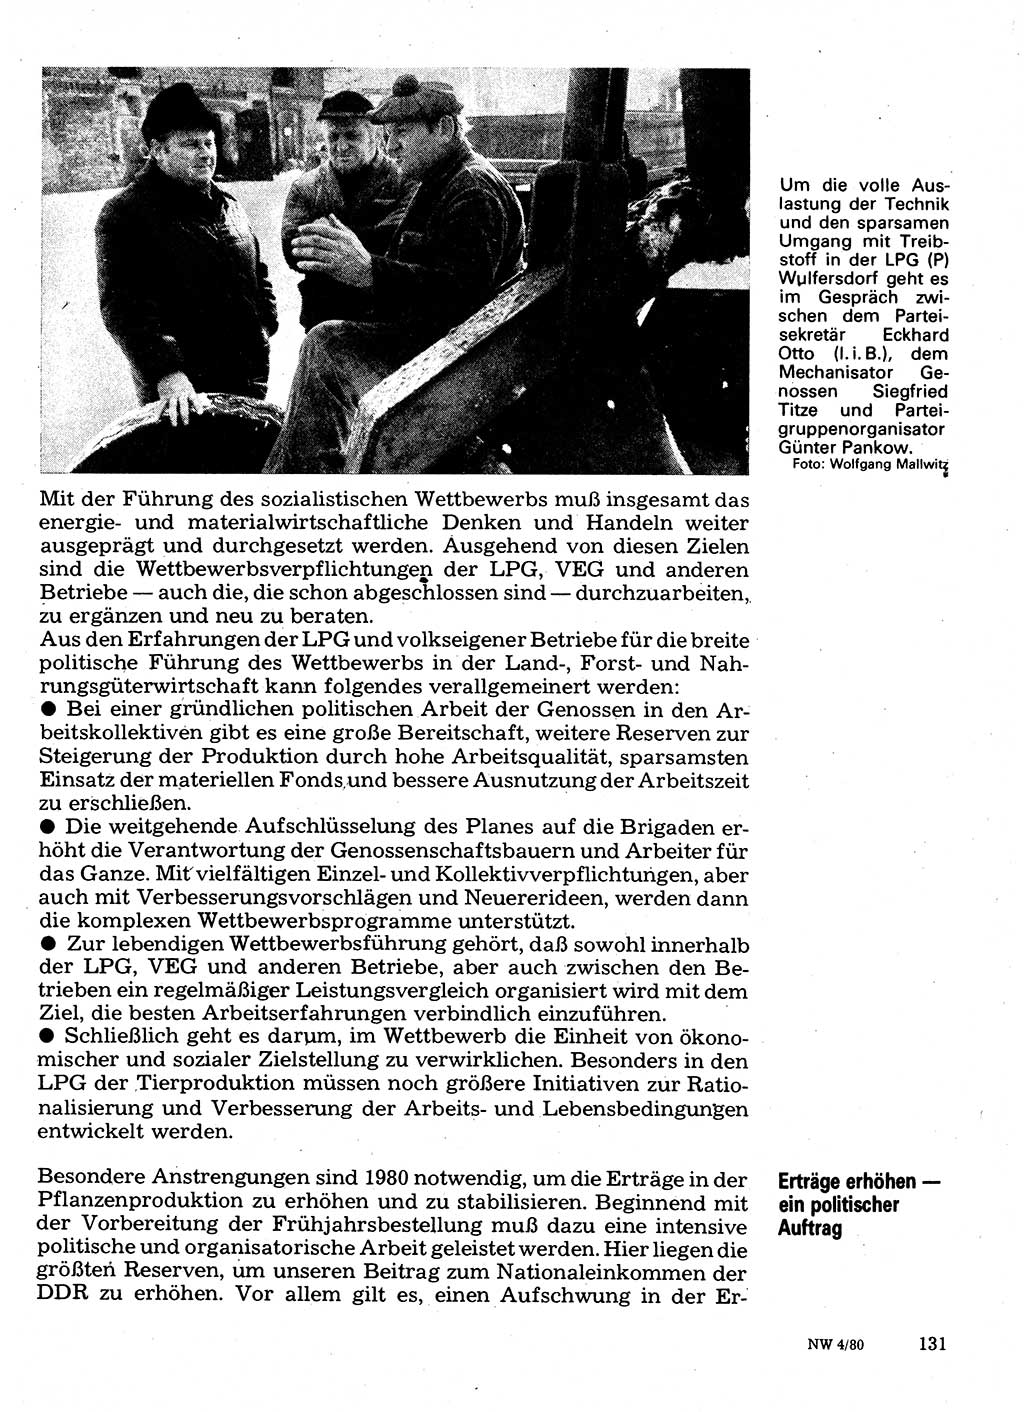 Neuer Weg (NW), Organ des Zentralkomitees (ZK) der SED (Sozialistische Einheitspartei Deutschlands) für Fragen des Parteilebens, 35. Jahrgang [Deutsche Demokratische Republik (DDR)] 1980, Seite 131 (NW ZK SED DDR 1980, S. 131)